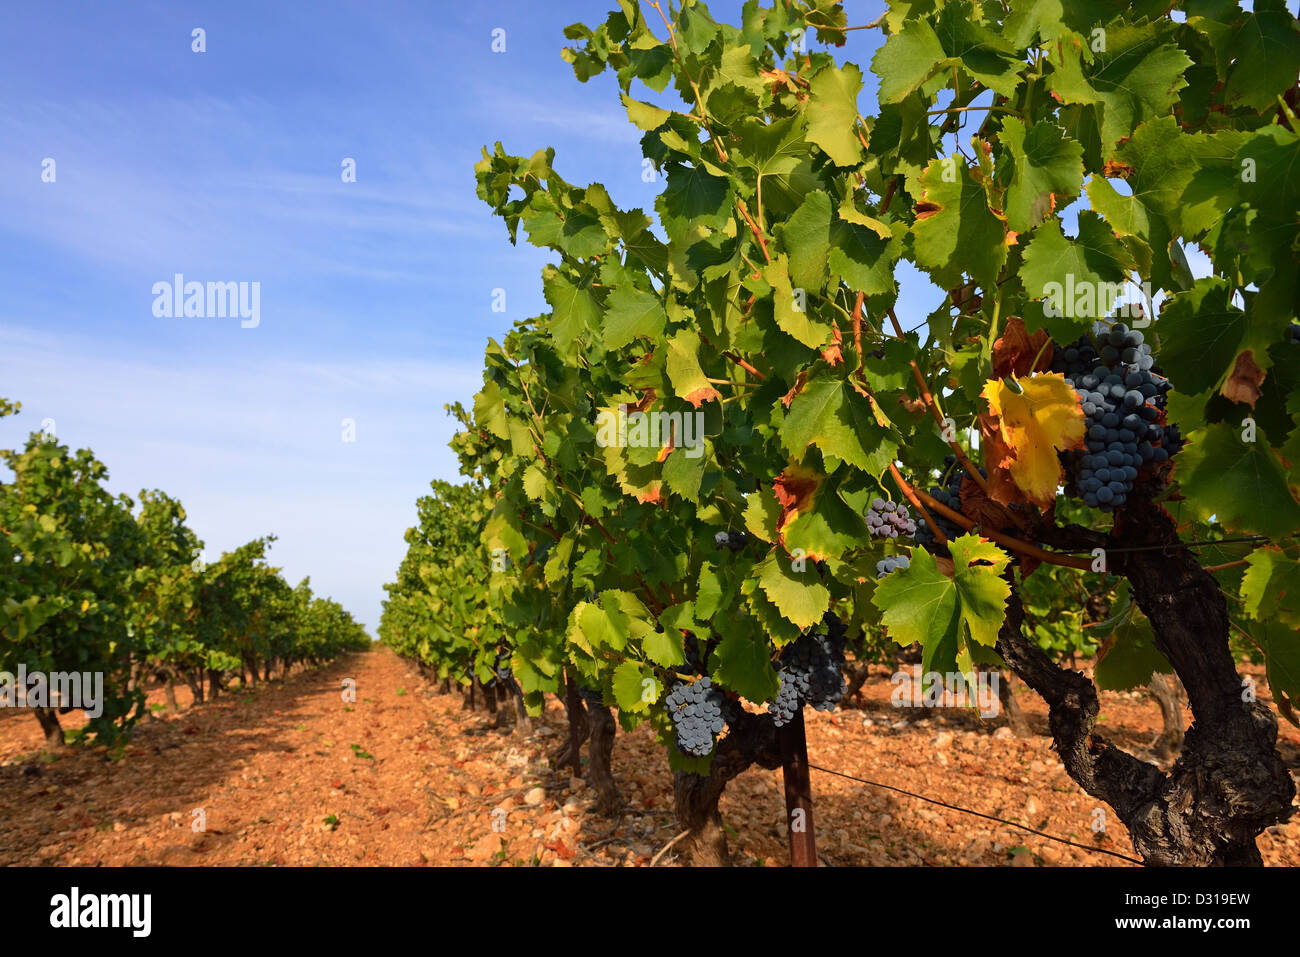 Les raisins noirs de la vigne, Trets, près de Aix-en-Provence, dans les Bouches-du-Rhône, Cote du Rhone, France Banque D'Images